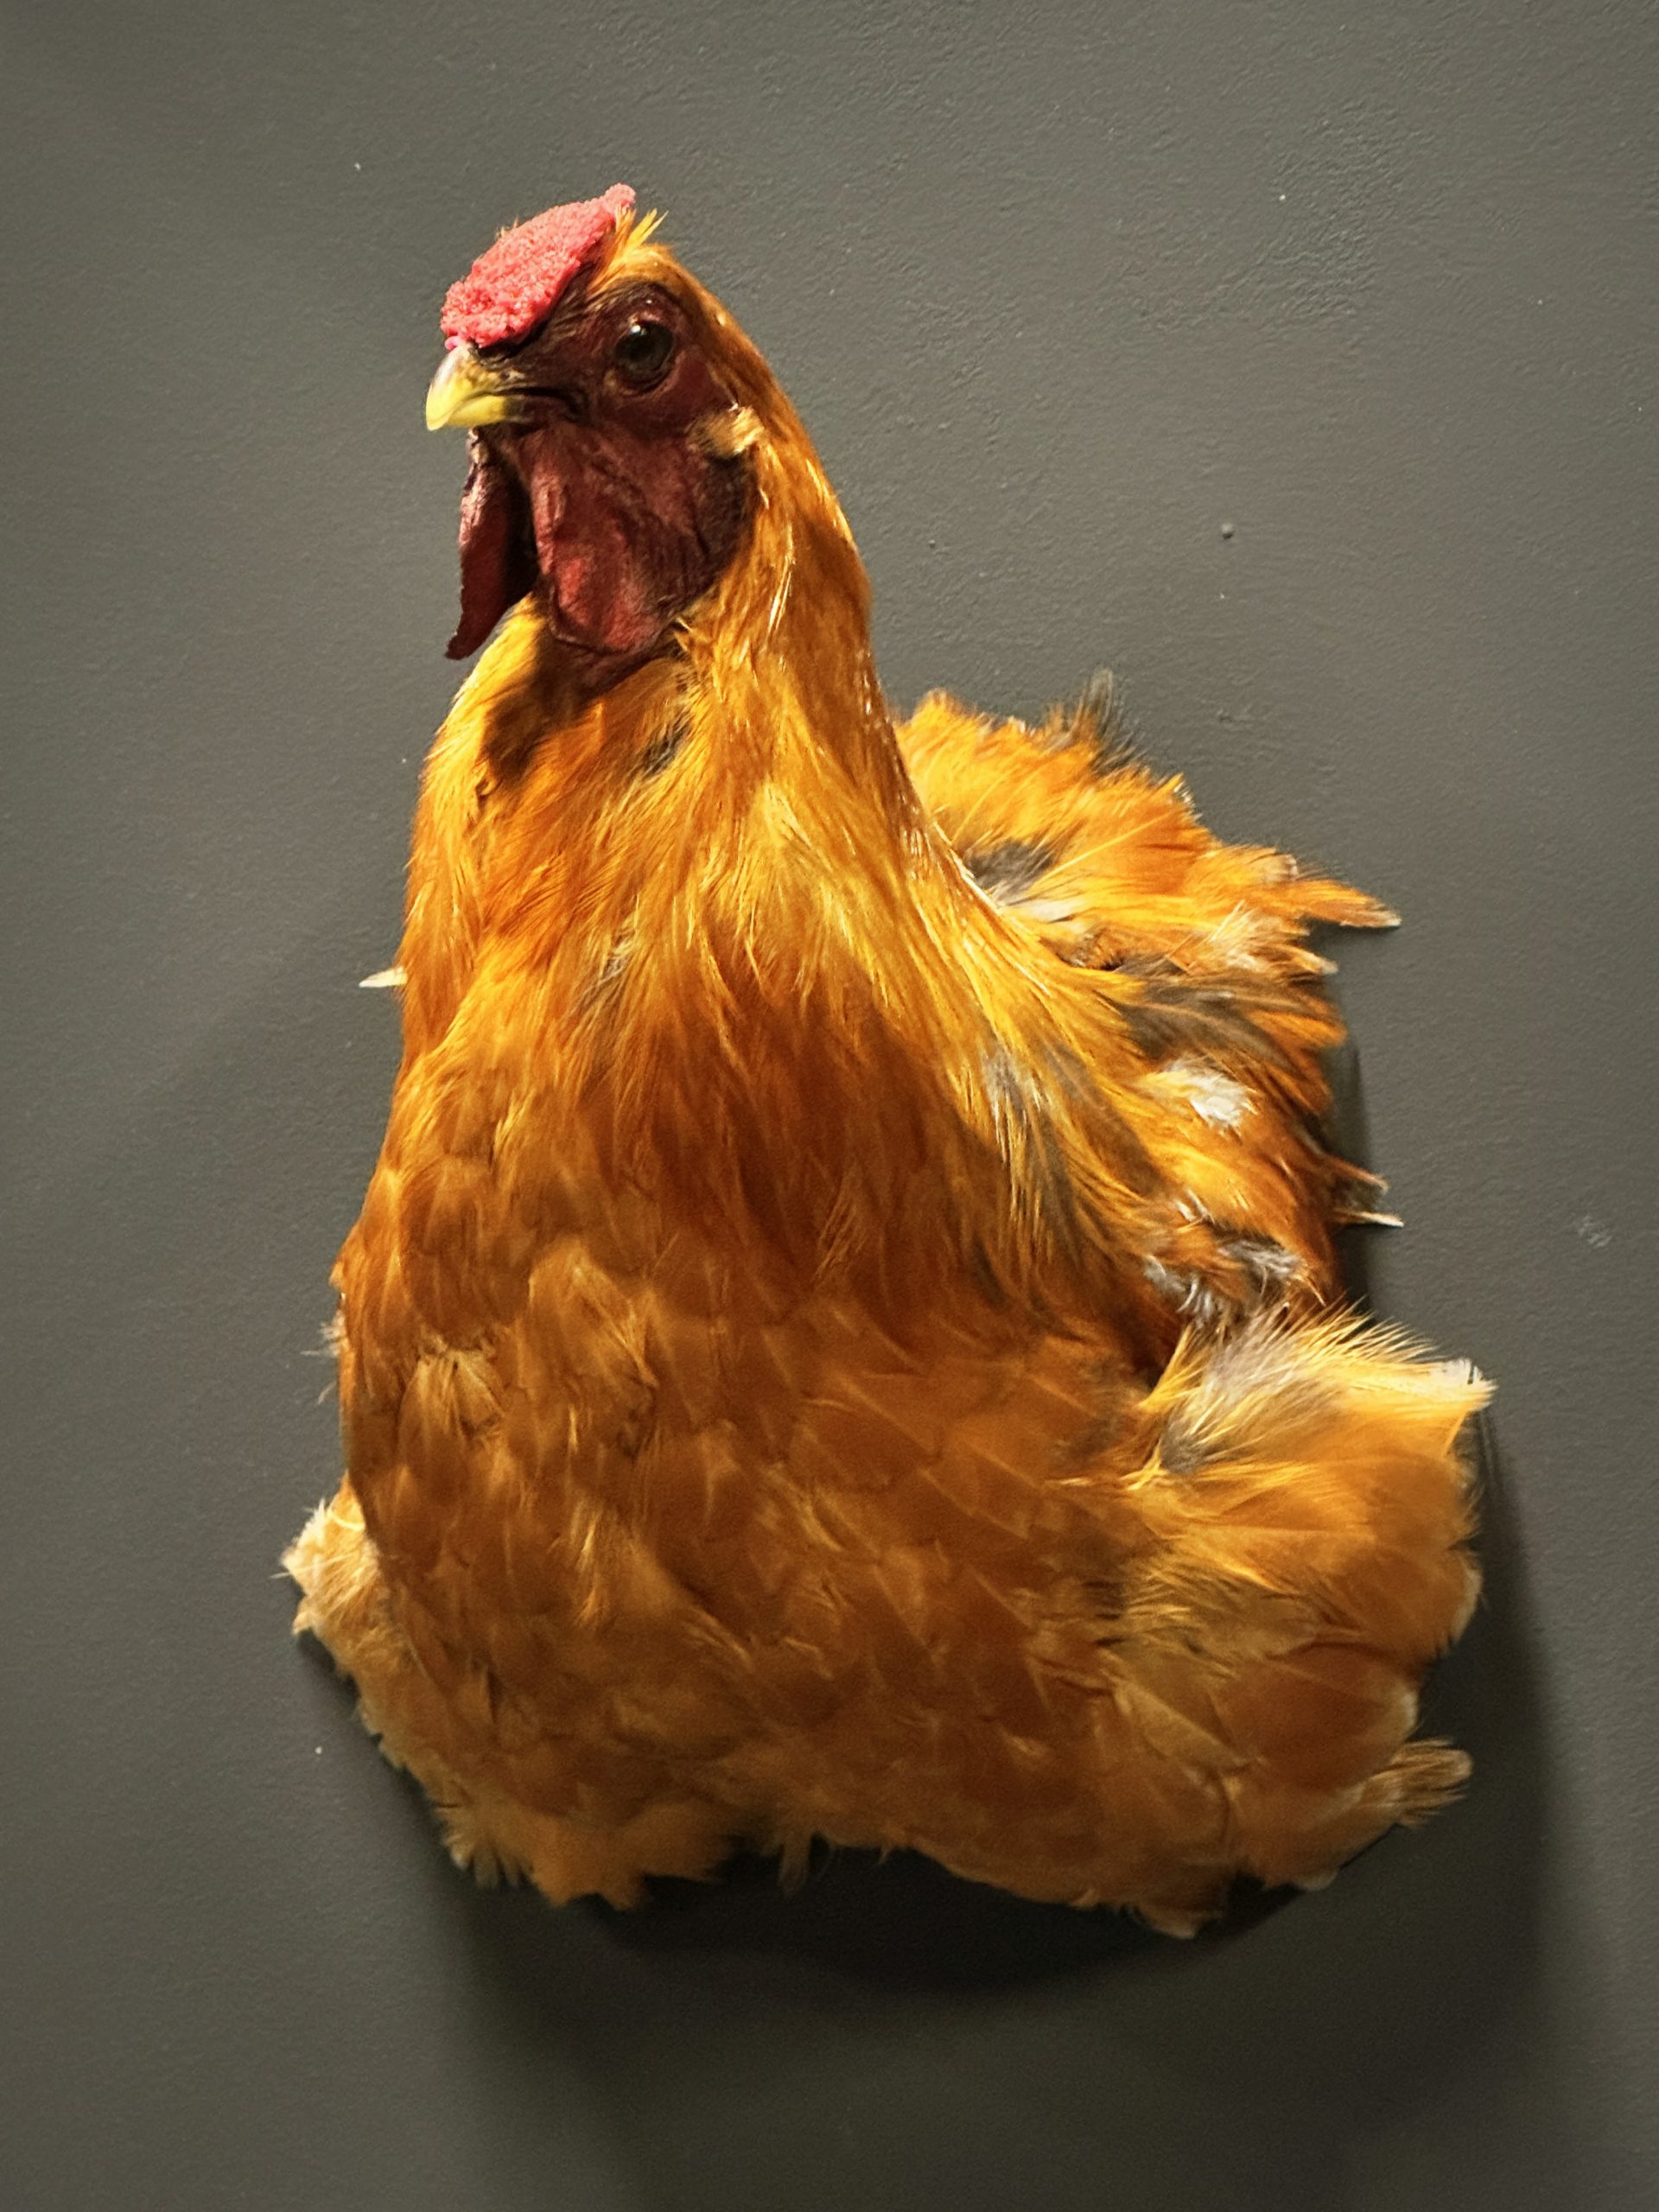 Opgezette kop van een kip